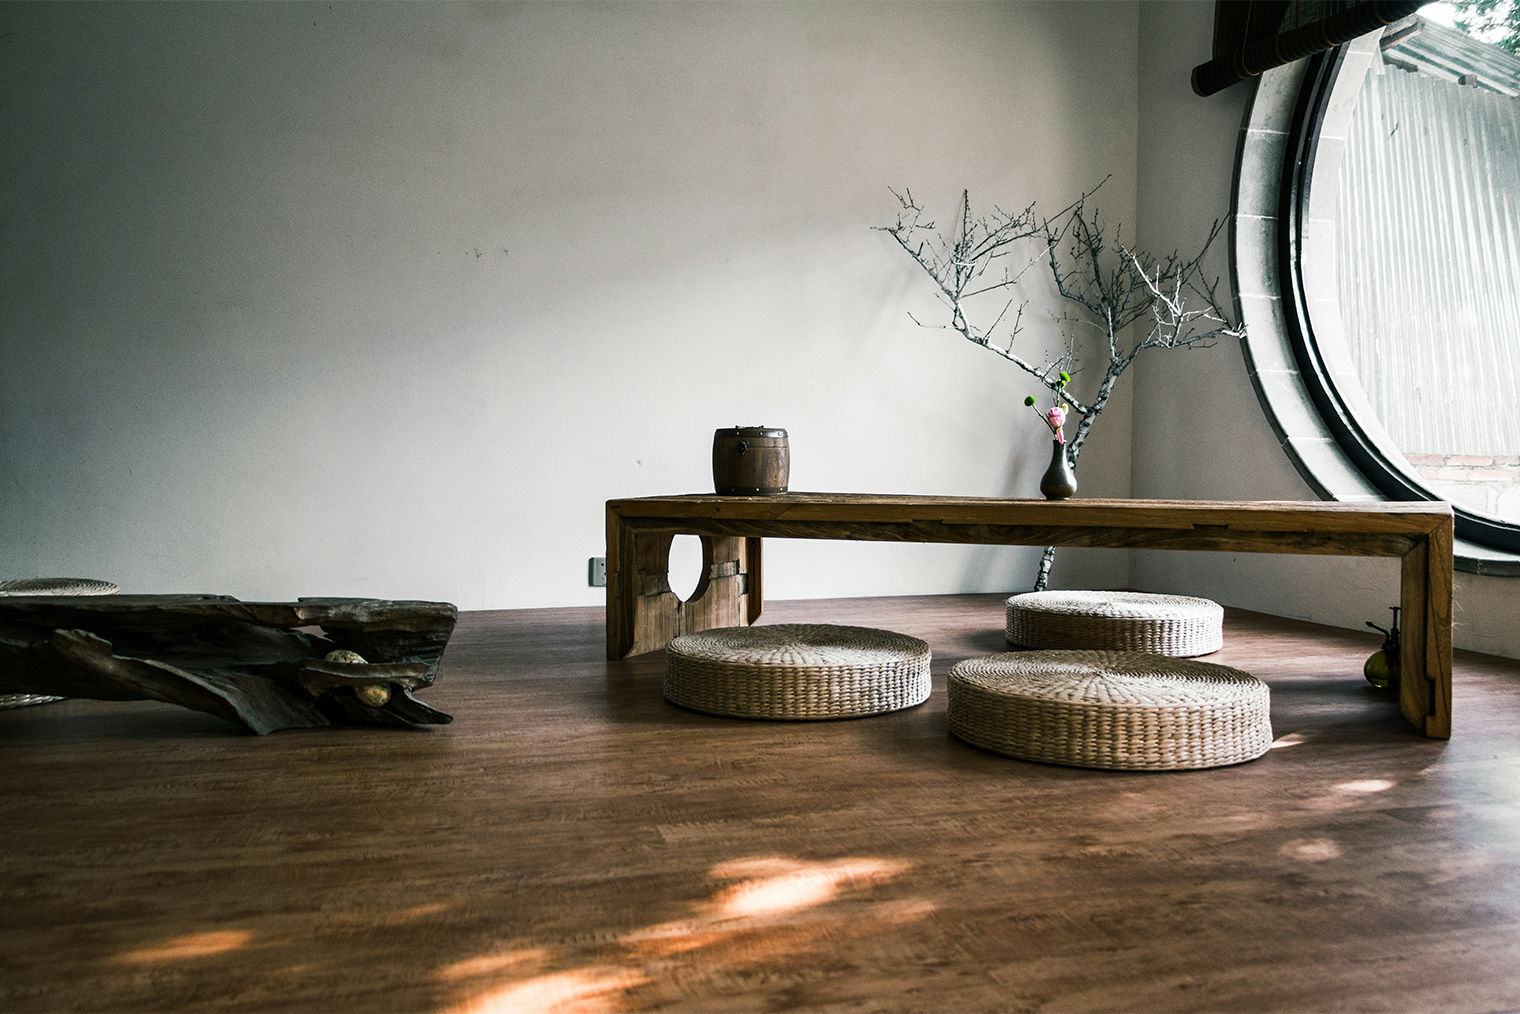 Низкая мебель, отсутствие полноценных стульев, минимум мебели и все из натуральных материалов — типичные признаки японского стиля. Фотография: Daniel Chen / Unsplash